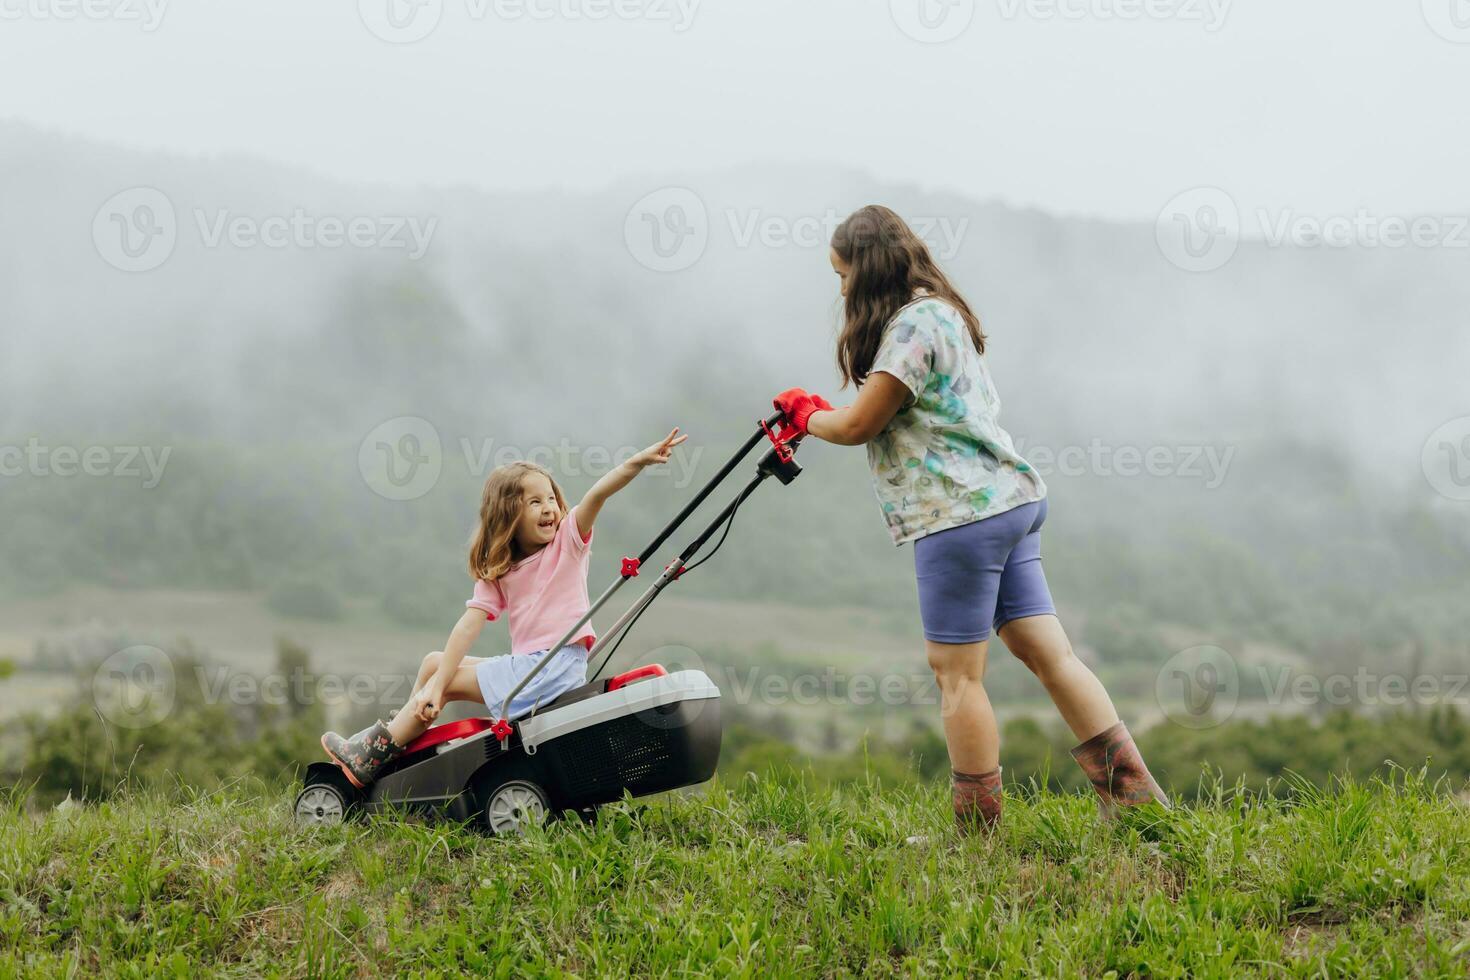 een vrouw in laarzen met haar kind in de het formulier van een spel maait de gras met een grasmaaier in de tuin tegen de achtergrond van bergen en mist, tuin gereedschap concept foto